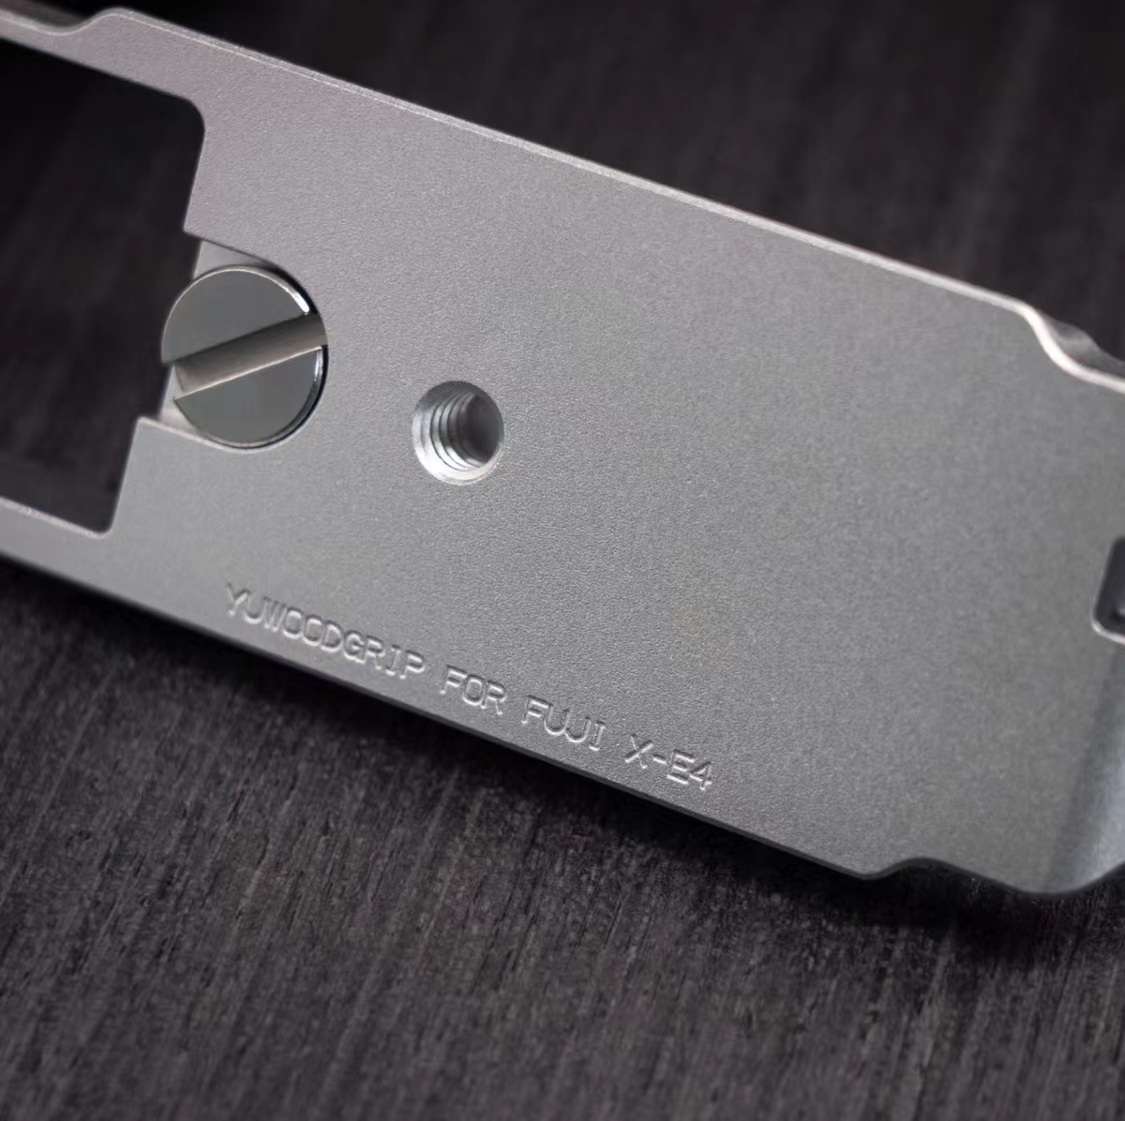  новый товар серебряный Fuji Film FUJIFILM xe4 XE4 для рукоятка для сжимания 